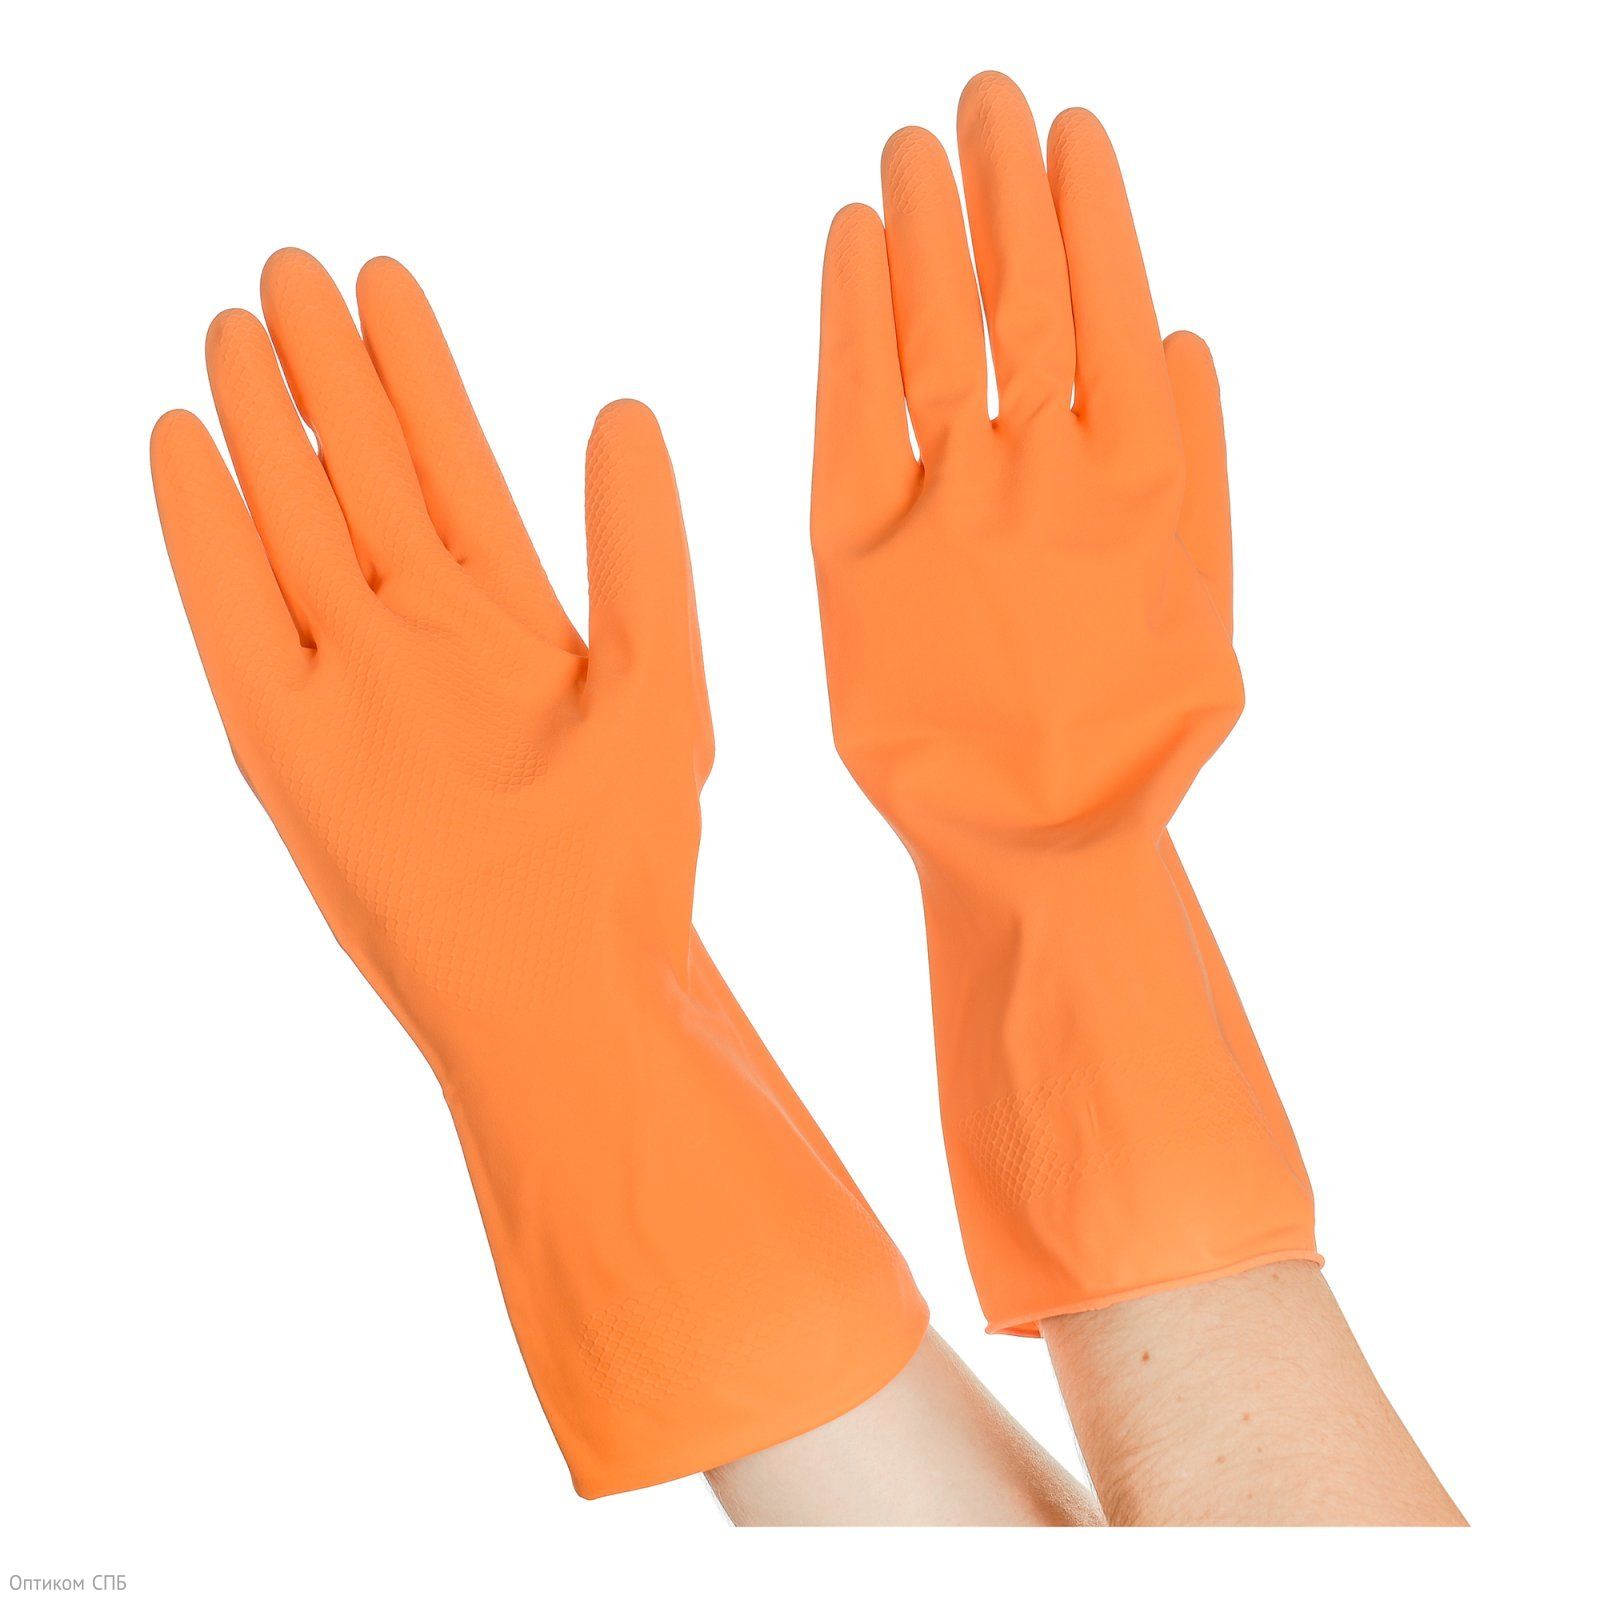 Перчатки резиновые хозяйственные Optilineприменяются для защиты рук во время уборки, стирки, мытья посуды, садовых и ремонтных рабор. Надежно защищают руки от воздействия влаги, грязи, механических повреждений. Внутреннее напыление из хлопка обеспечивает комфорт при использовании, позволяет легко снимать и надевать перчатки. Имеют противоскользящий текстурированный рисунок на ладони и пальцах для надежного захвата предметов. Размер М. Поставляются в полиэтиленовой упаковке.